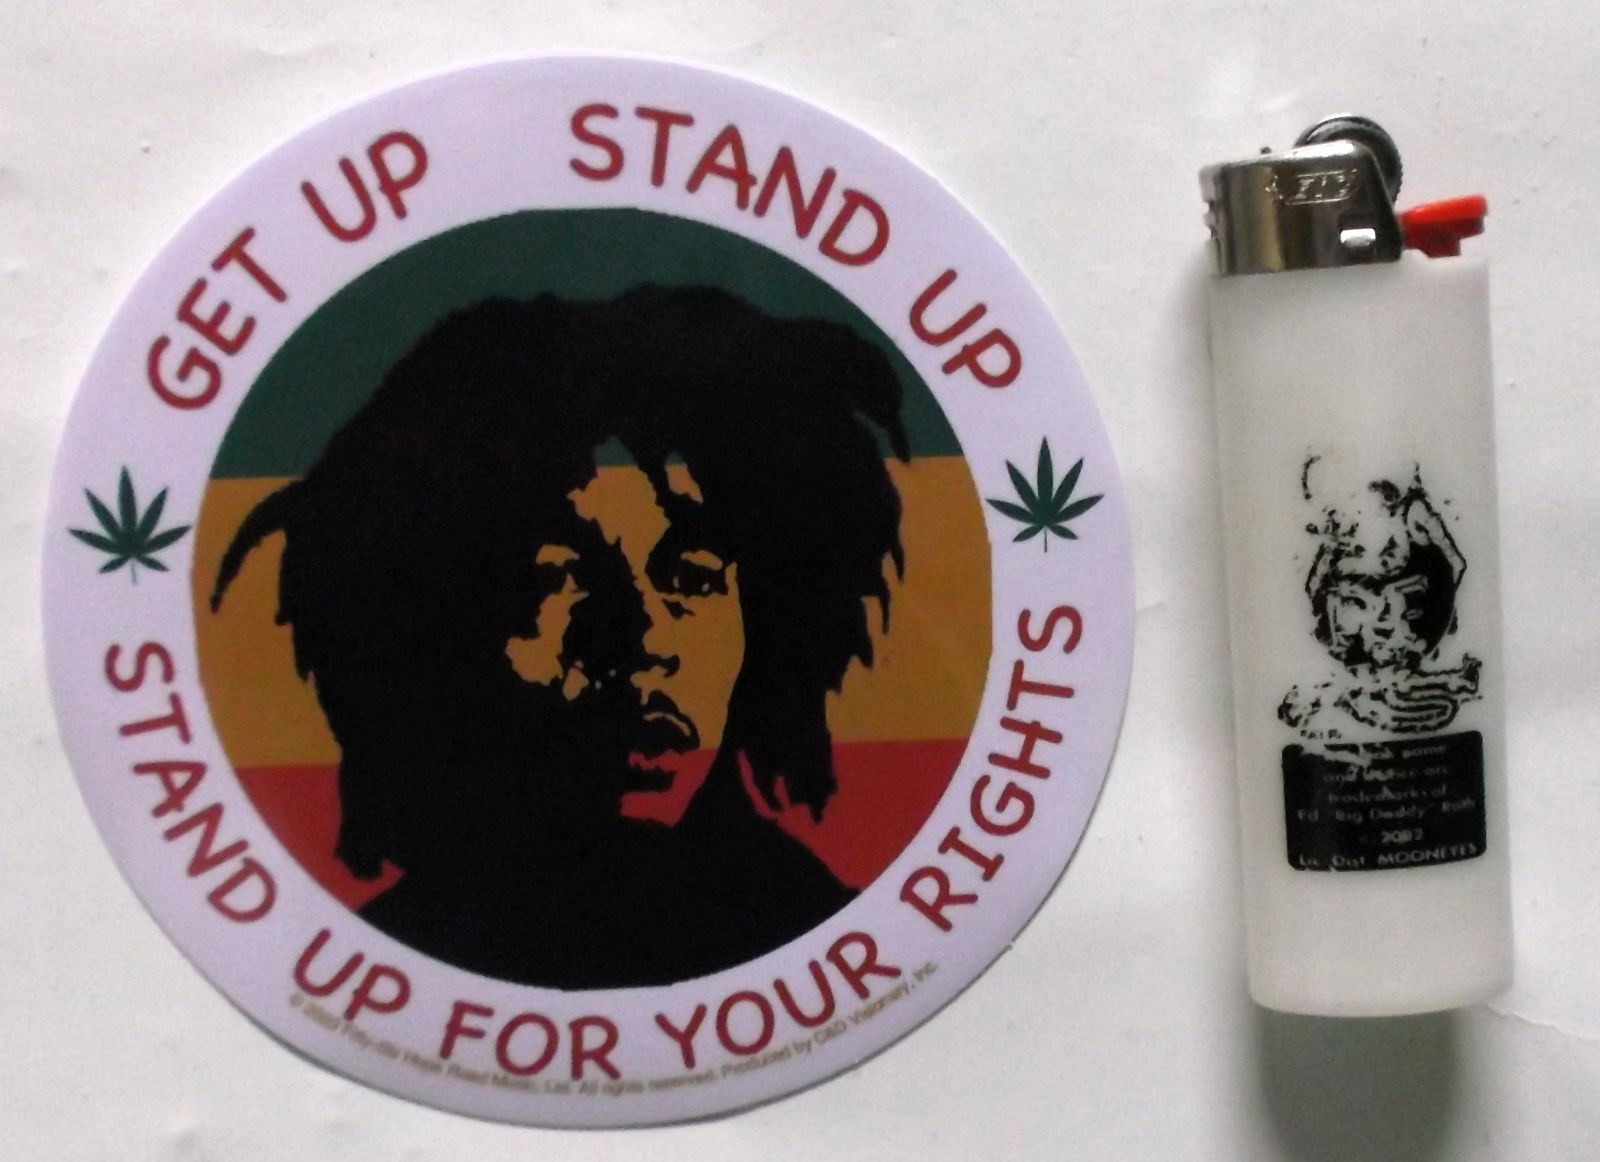 ★ボブ マーリー ステッカー Bob Marley 3pcs 正規品 レゲエ Reggae jamaica